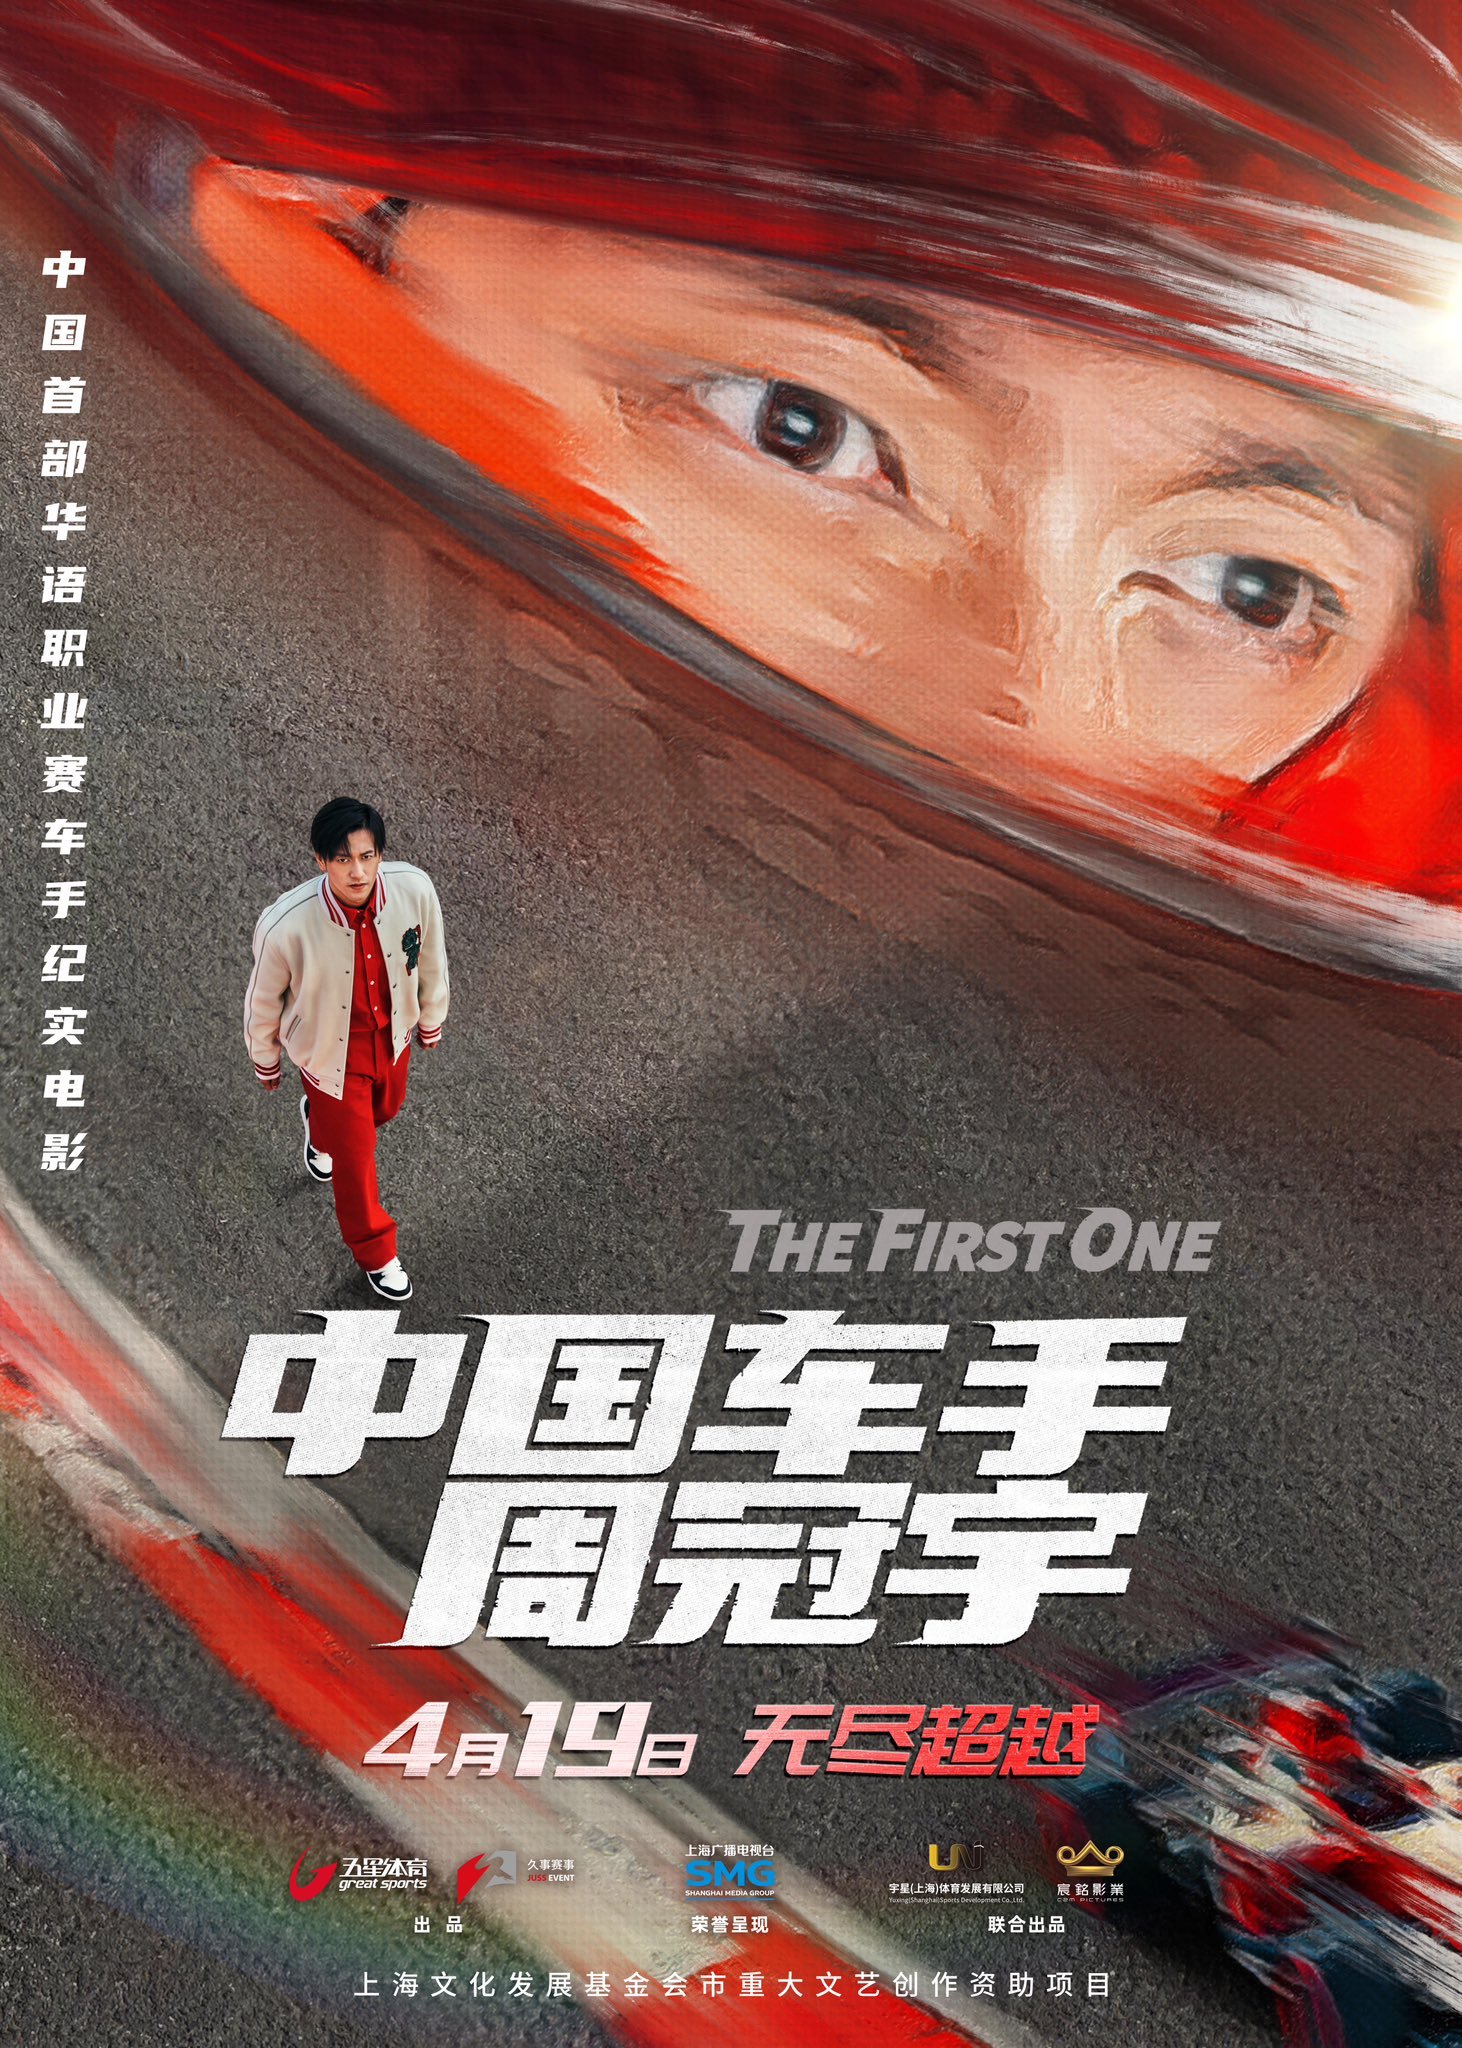 “The first one”, documentário sobre a trajetória de Zhou Guanyu é anunciado